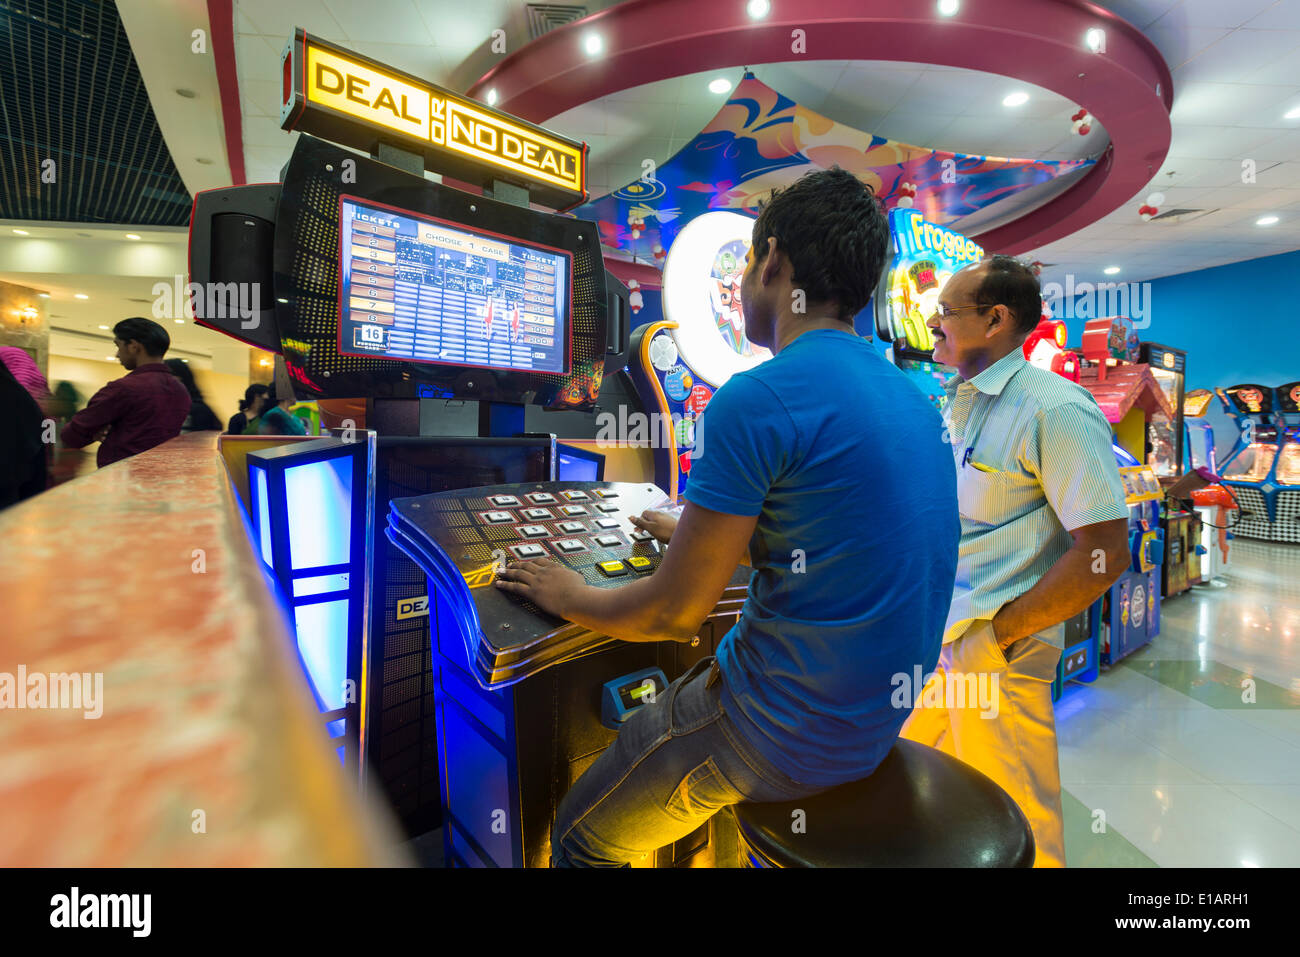 Two men playing at a gaming machine, Lulu Mall, Kochi, Kerala, India Stock Photo